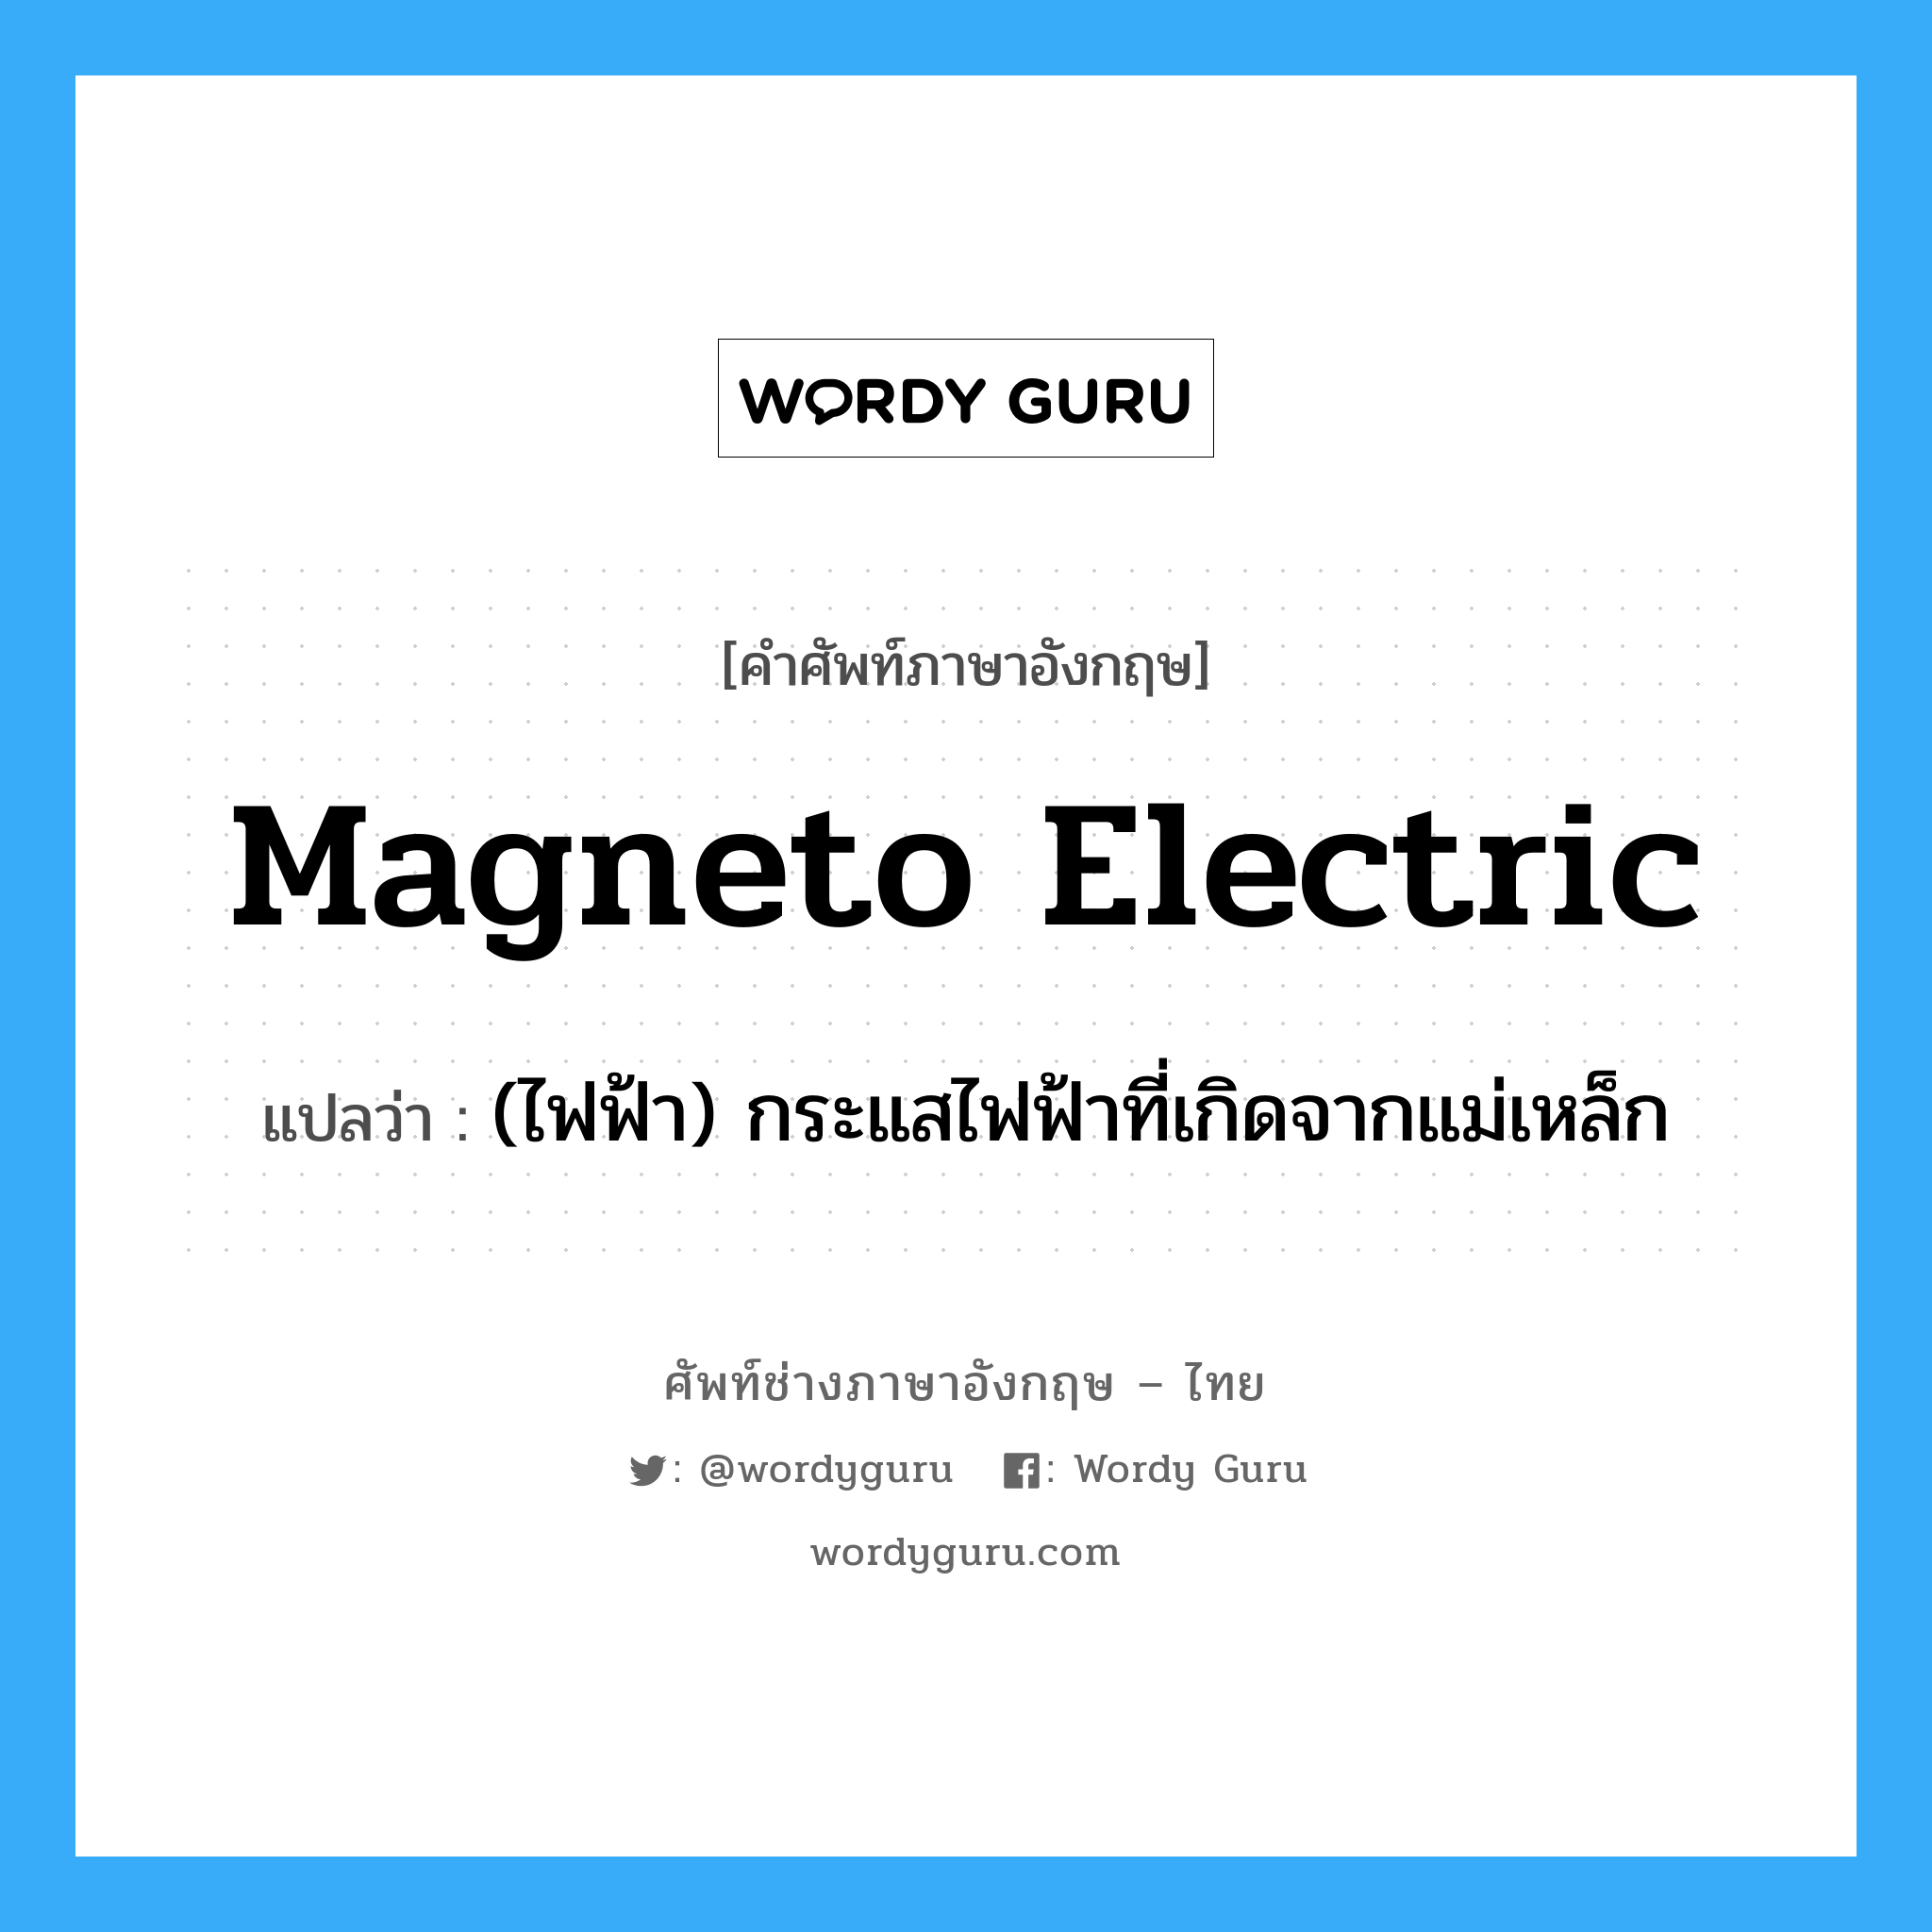 (ไฟฟ้า) กระแสไฟฟ้าที่เกิดจากแม่เหล็ก ภาษาอังกฤษ?, คำศัพท์ช่างภาษาอังกฤษ - ไทย (ไฟฟ้า) กระแสไฟฟ้าที่เกิดจากแม่เหล็ก คำศัพท์ภาษาอังกฤษ (ไฟฟ้า) กระแสไฟฟ้าที่เกิดจากแม่เหล็ก แปลว่า magneto electric